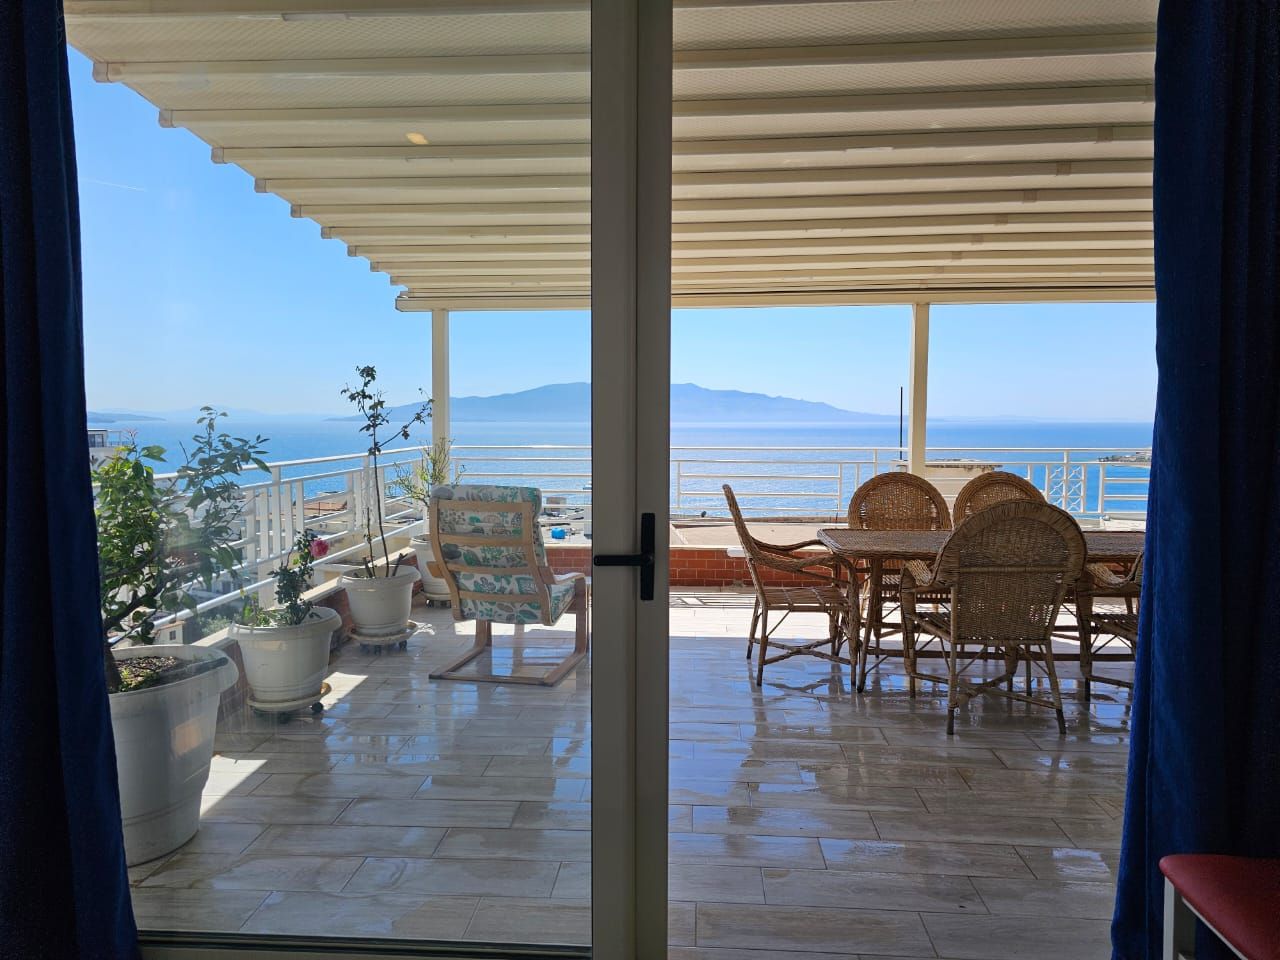 Albania eiendom i Saranda til salgs med to soverom i en moderne bolig med flott panoramautsikt over havet